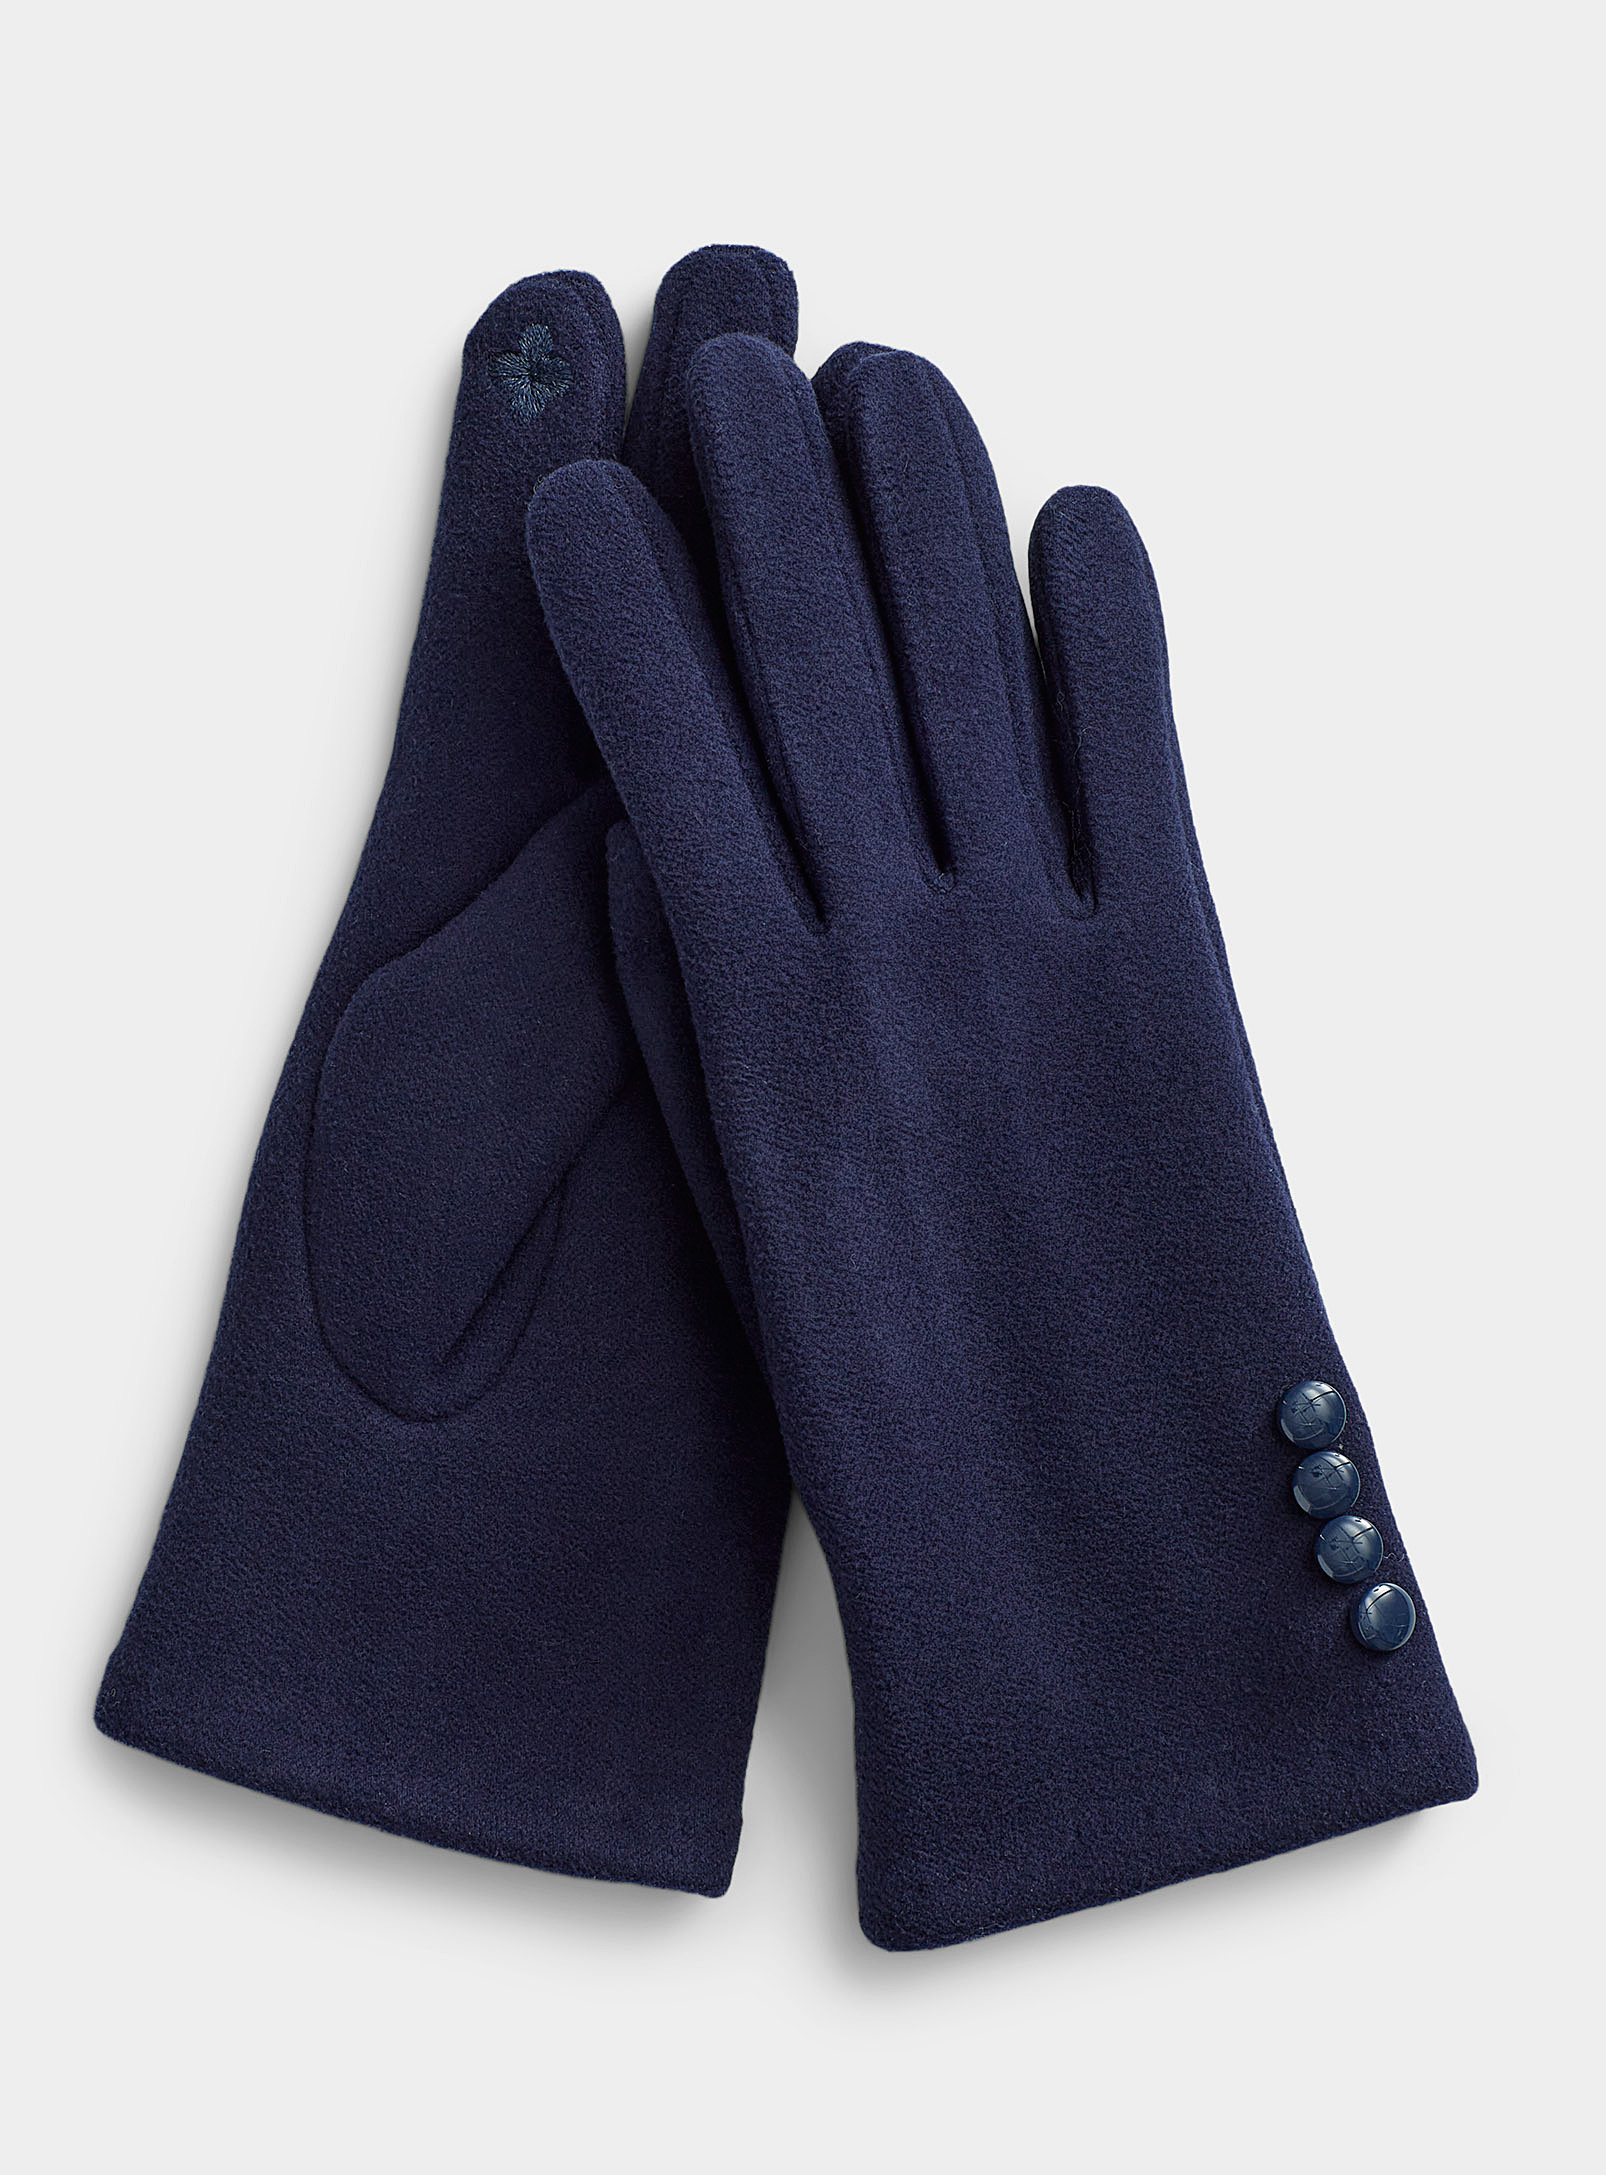 Simons - Women's Button-cuff gloves